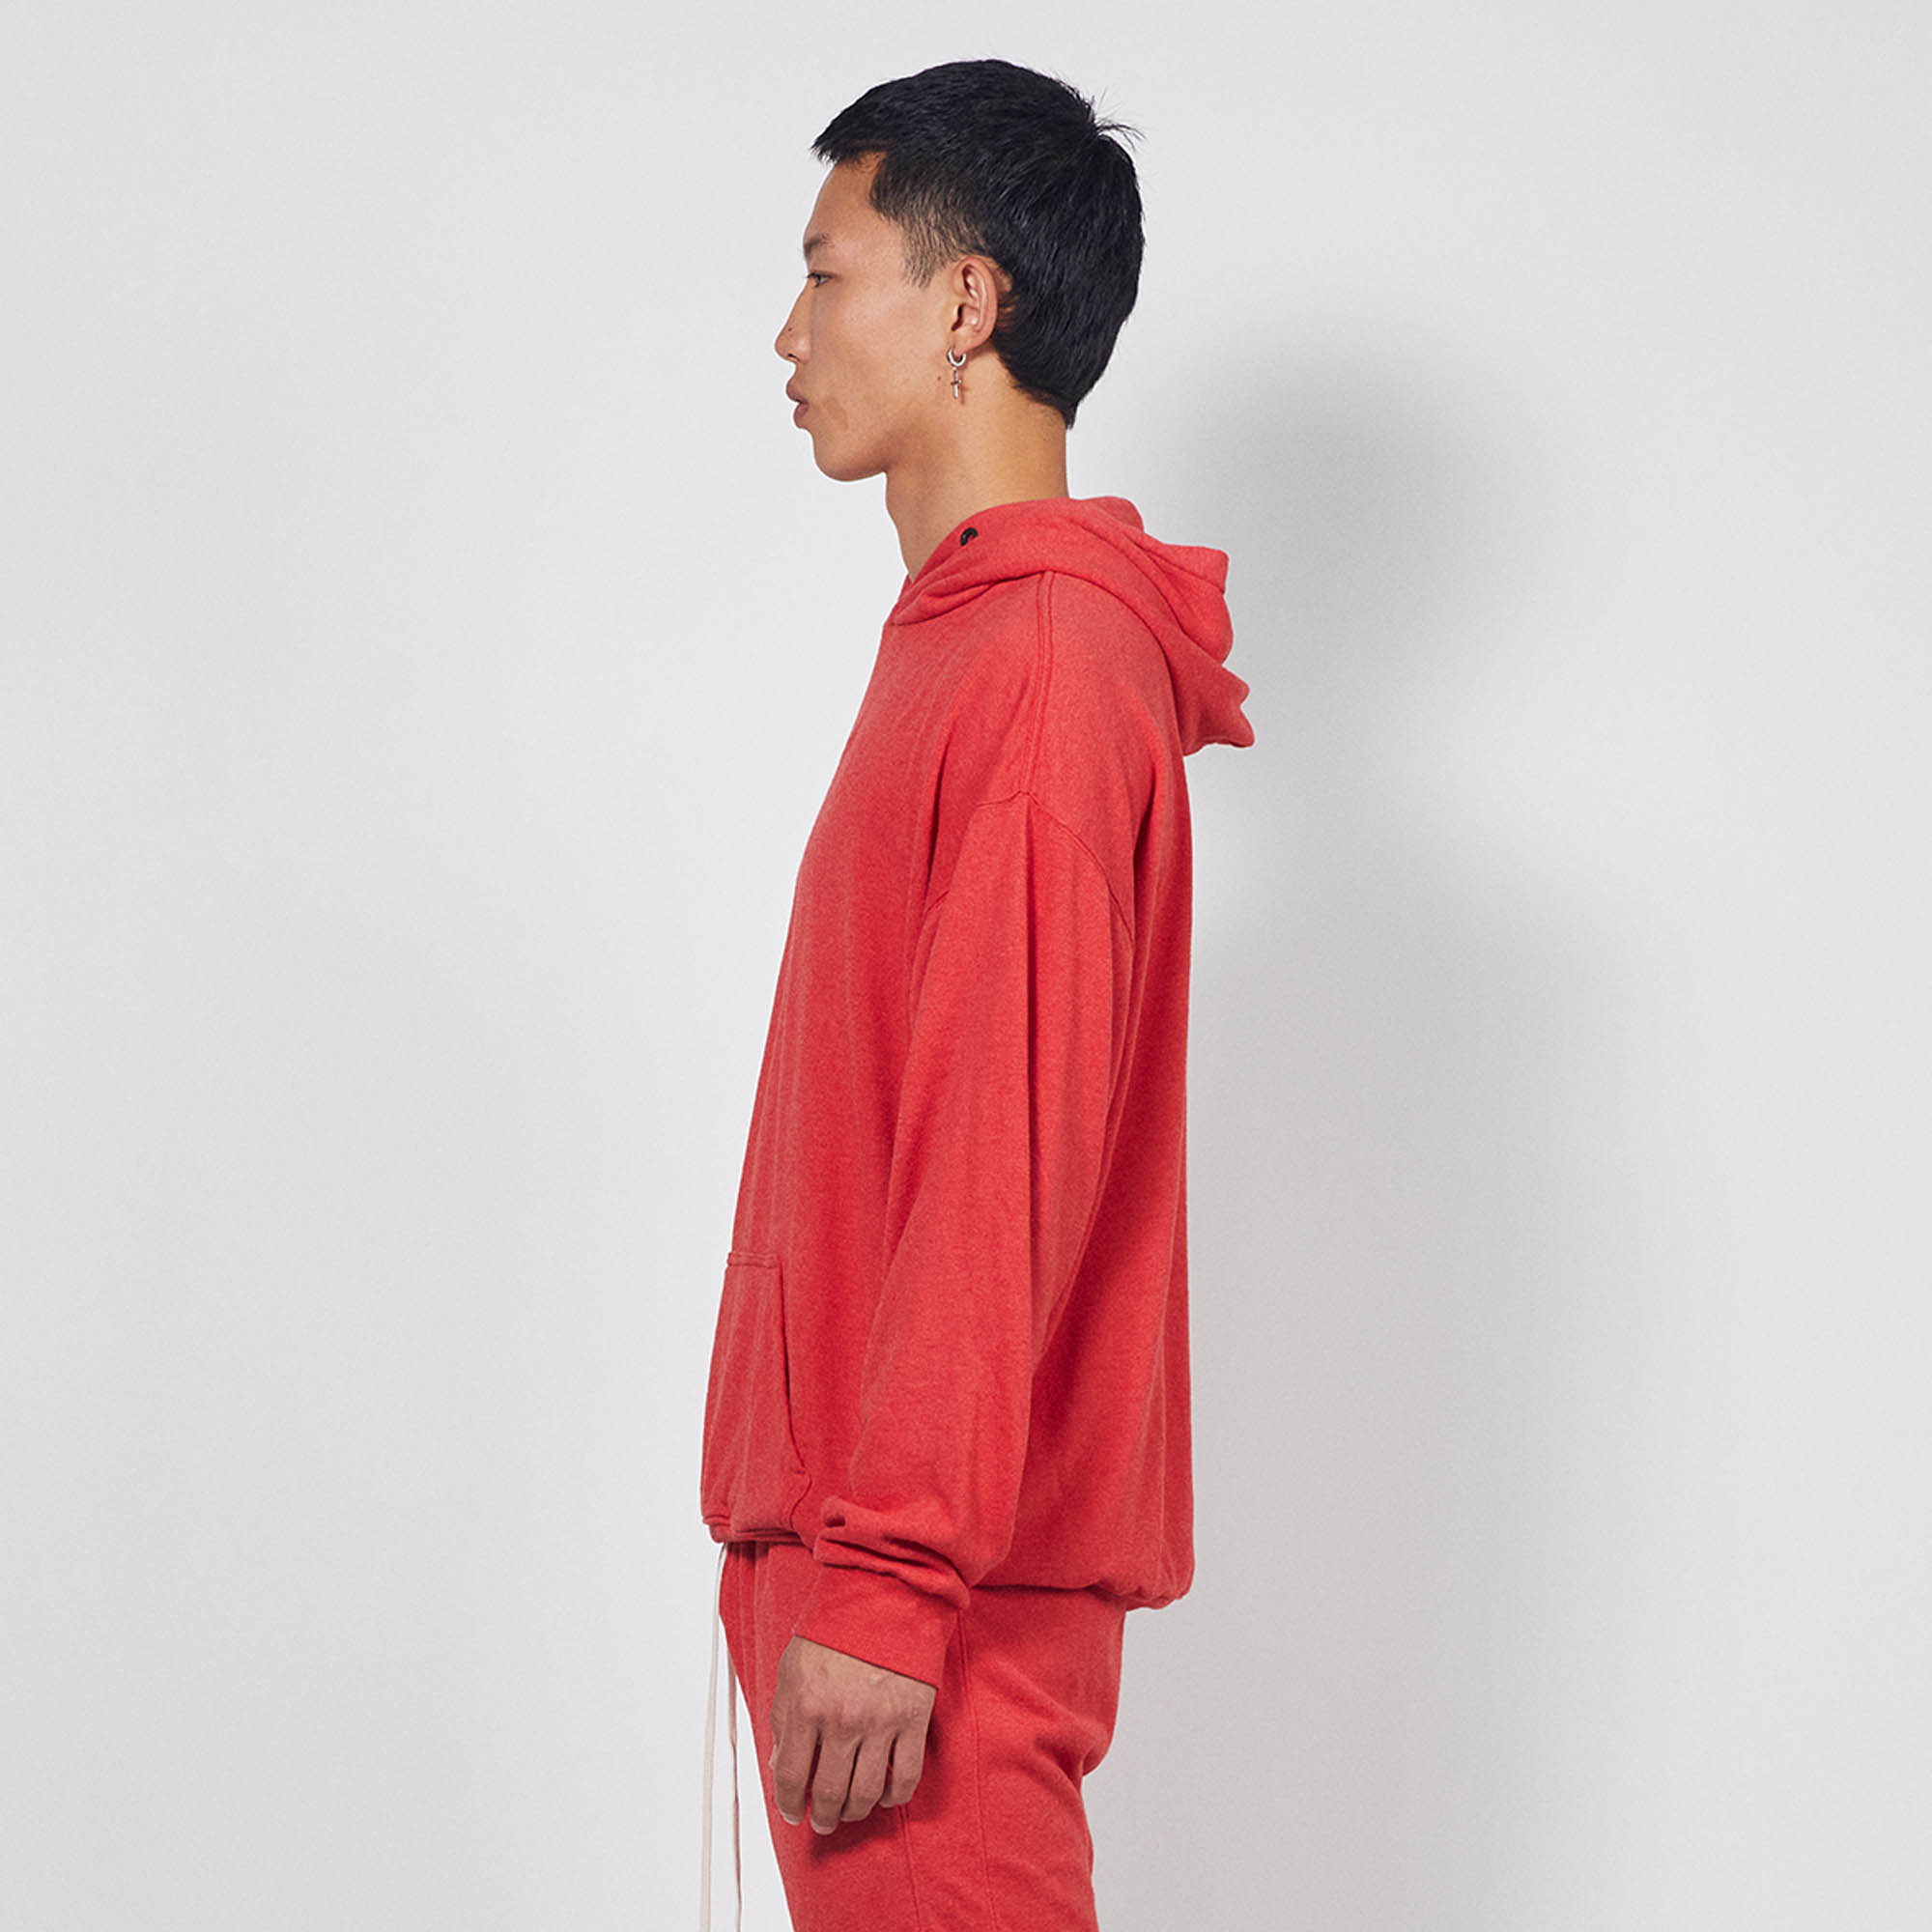 loop terry standard hoodie / red heather